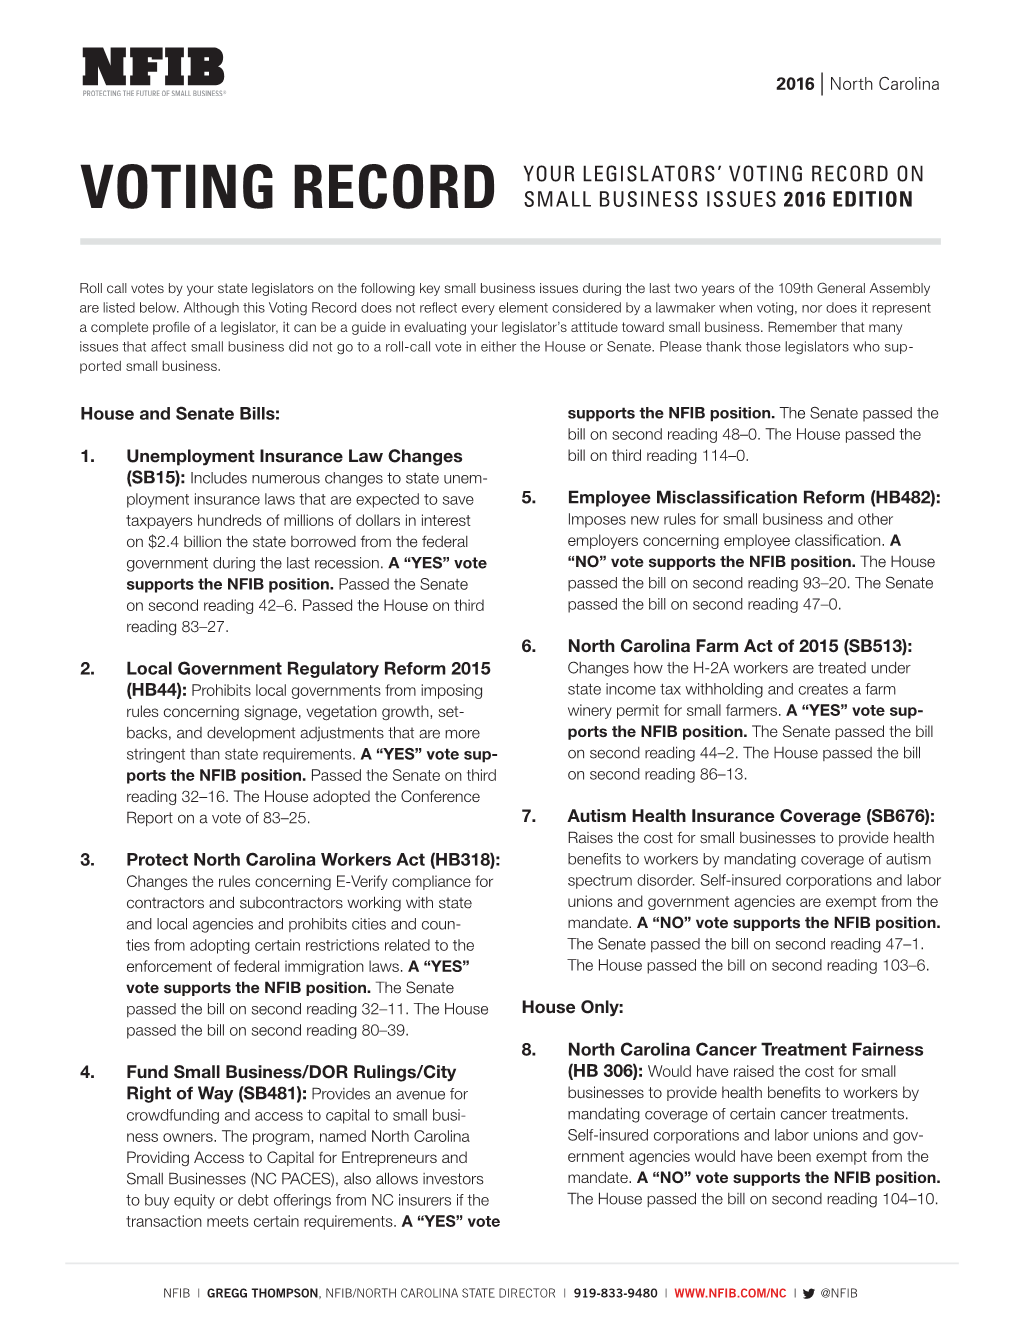 Senate Voting Record